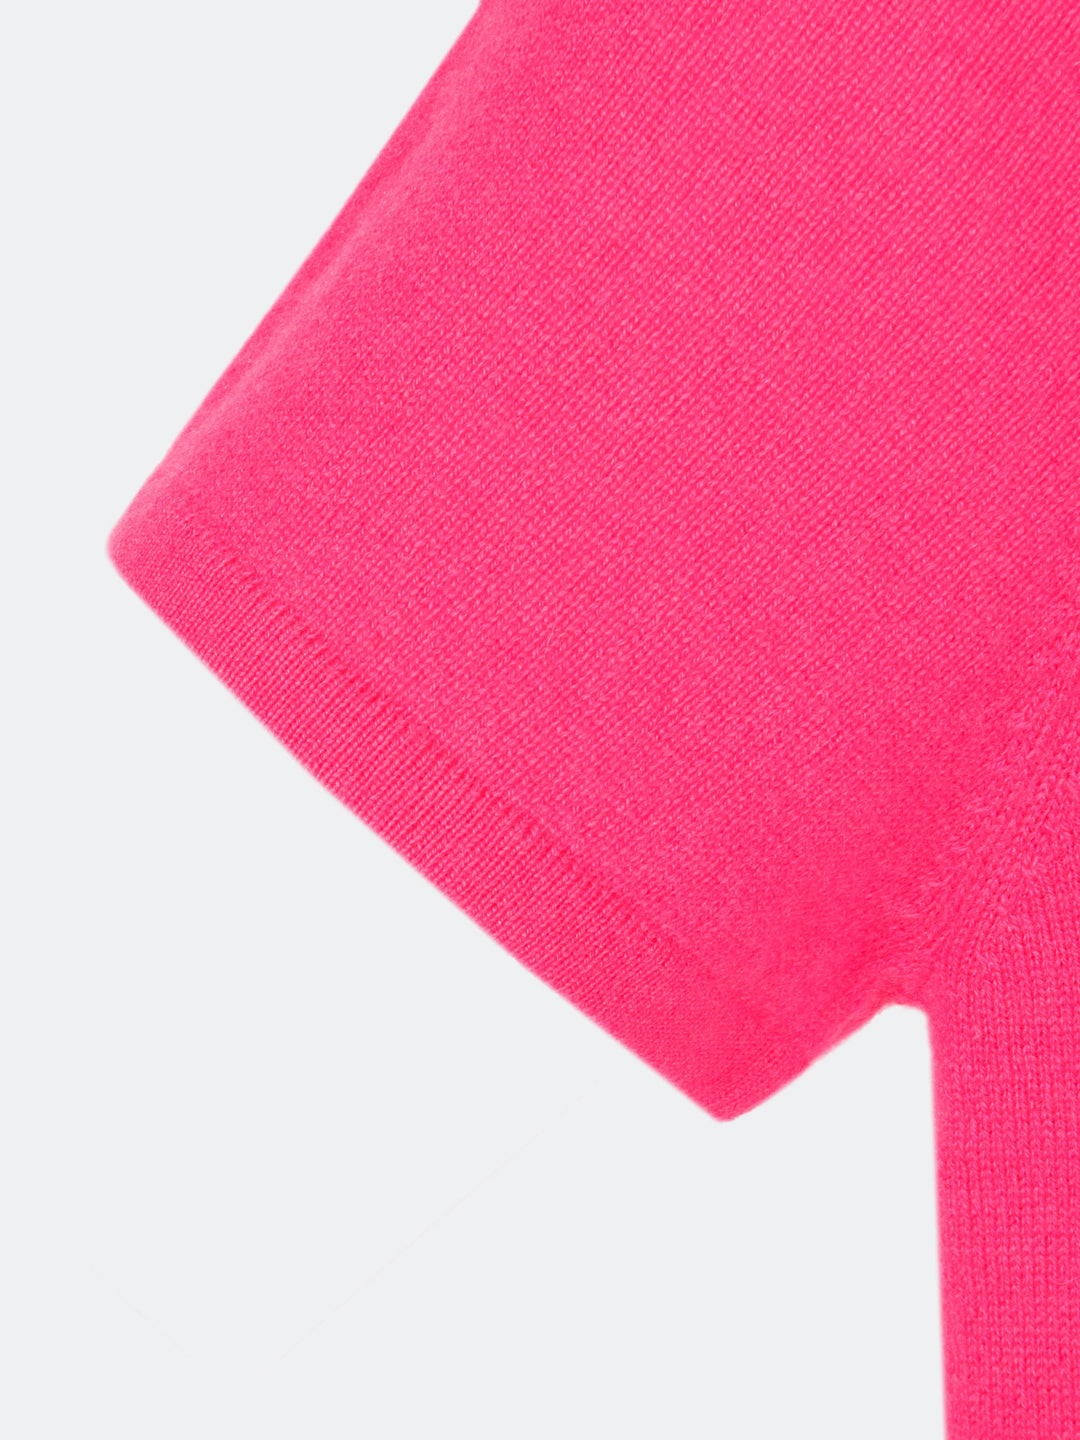 T-skjorte i kashmir ull, fresh, neon rosa, 100% kasjmir ull.